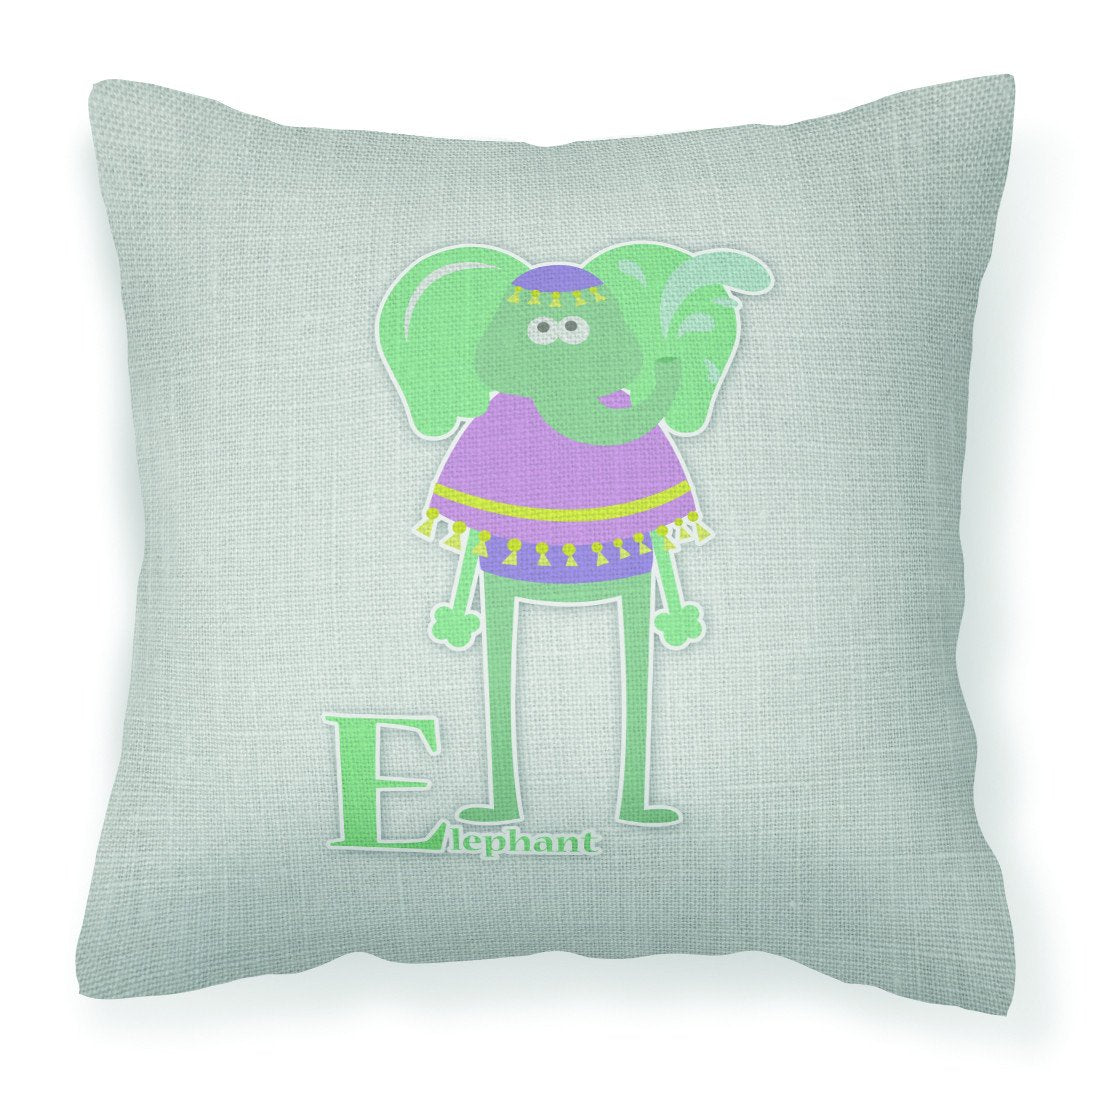 Alphabet E for Elephant Fabric Decorative Pillow BB5730PW1818 by Caroline's Treasures